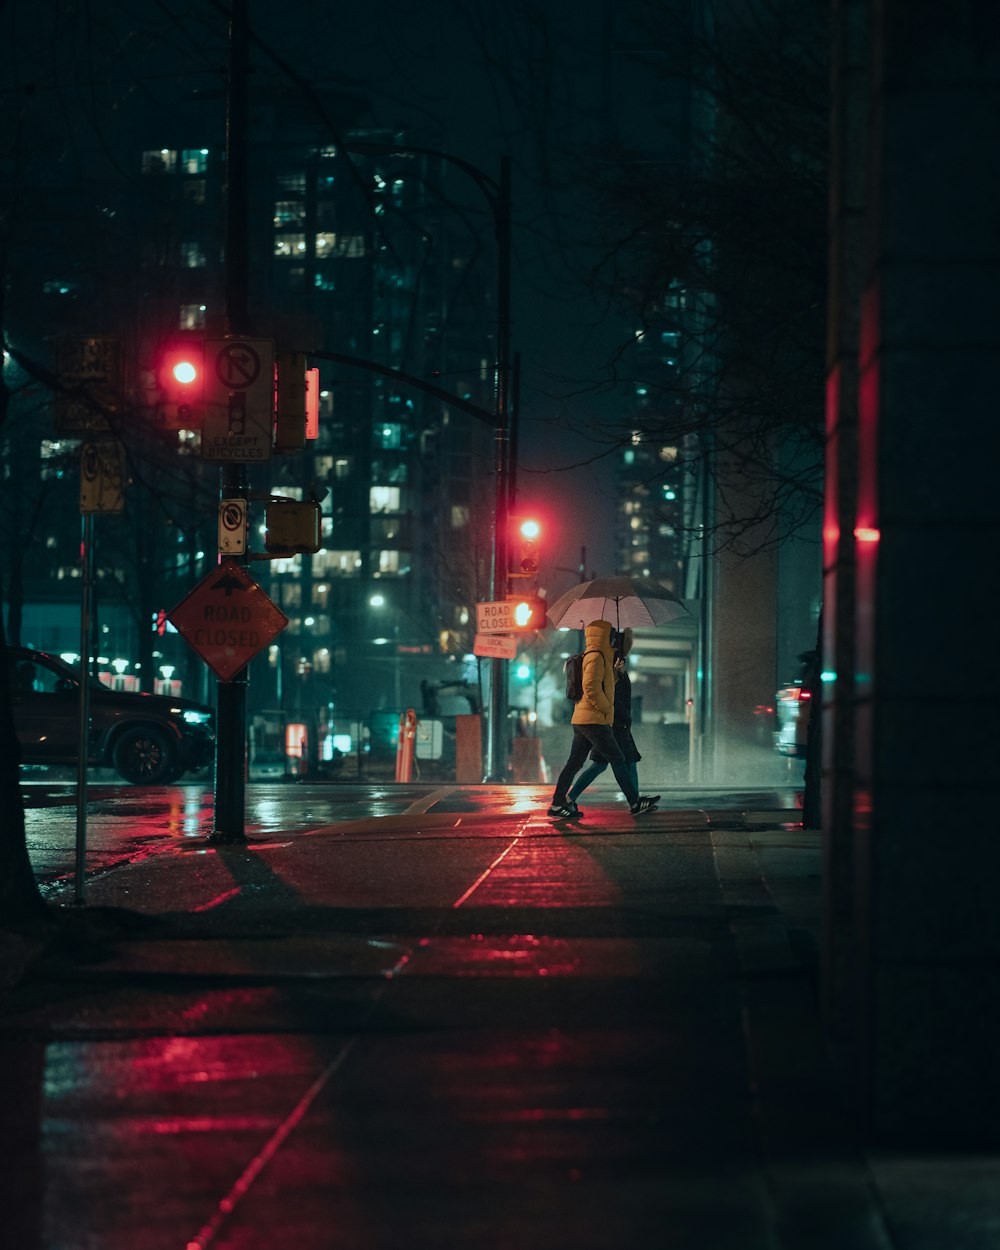 傘を持って夜の通りを歩いている人